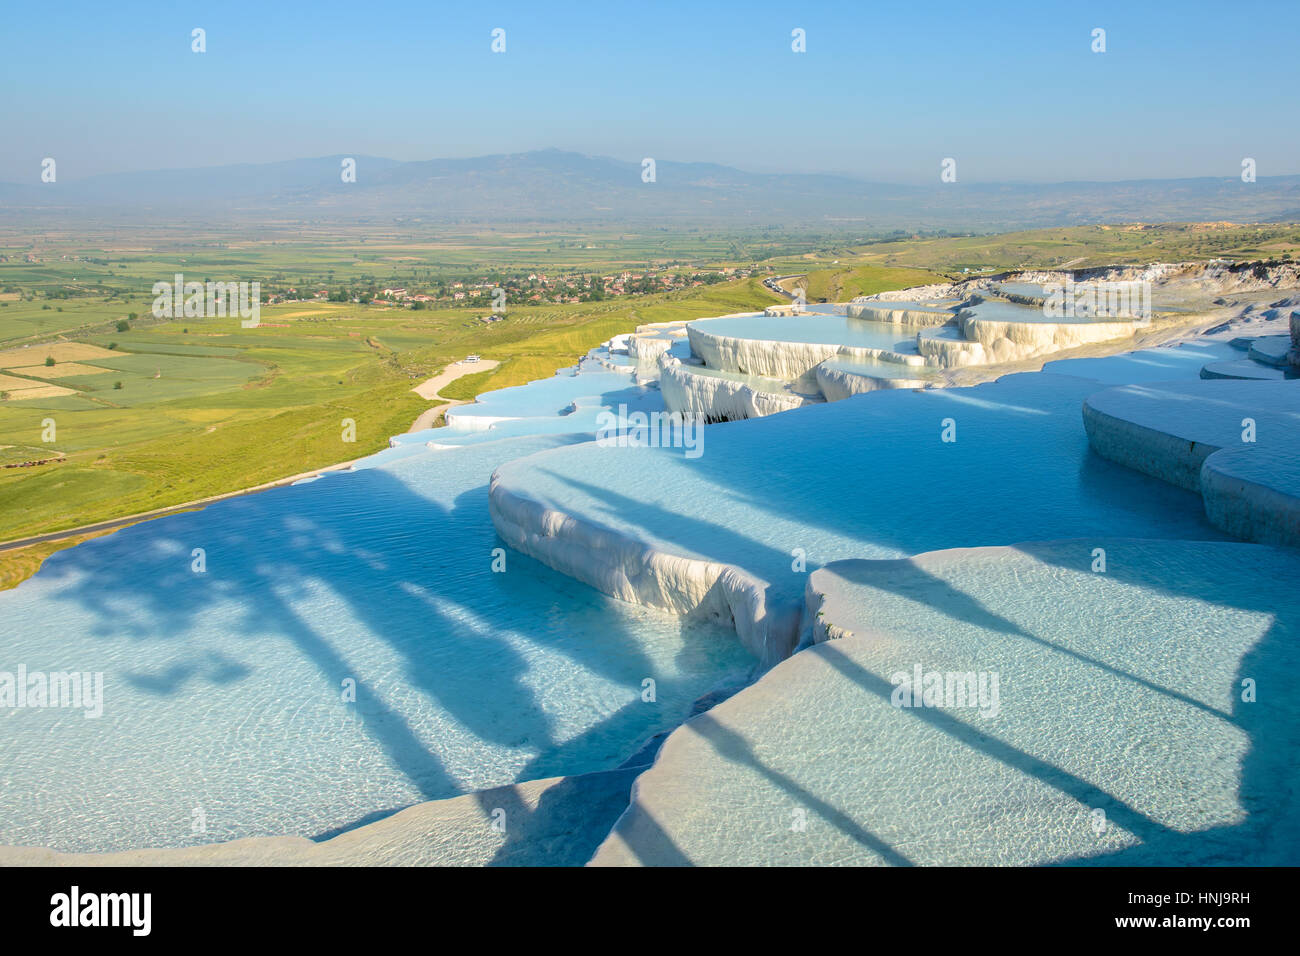 Las encantadoras piscinas de Pamukkale en Turquía. Pamukkale contiene aguas termales y tufo, terrazas de carbonatos minerales dejados por los que fluye el agua. Foto de stock